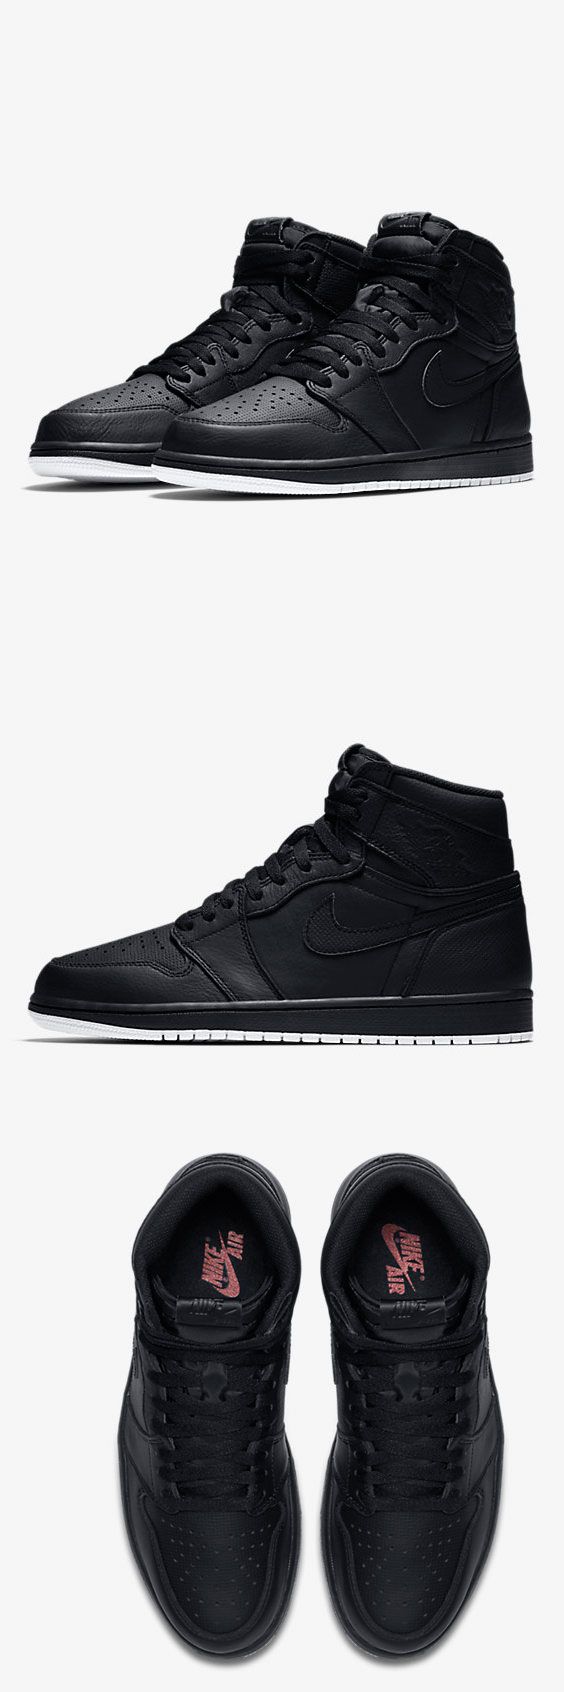 Nike Air Jordan 1 Retro High OG Men's Shoe $120–165